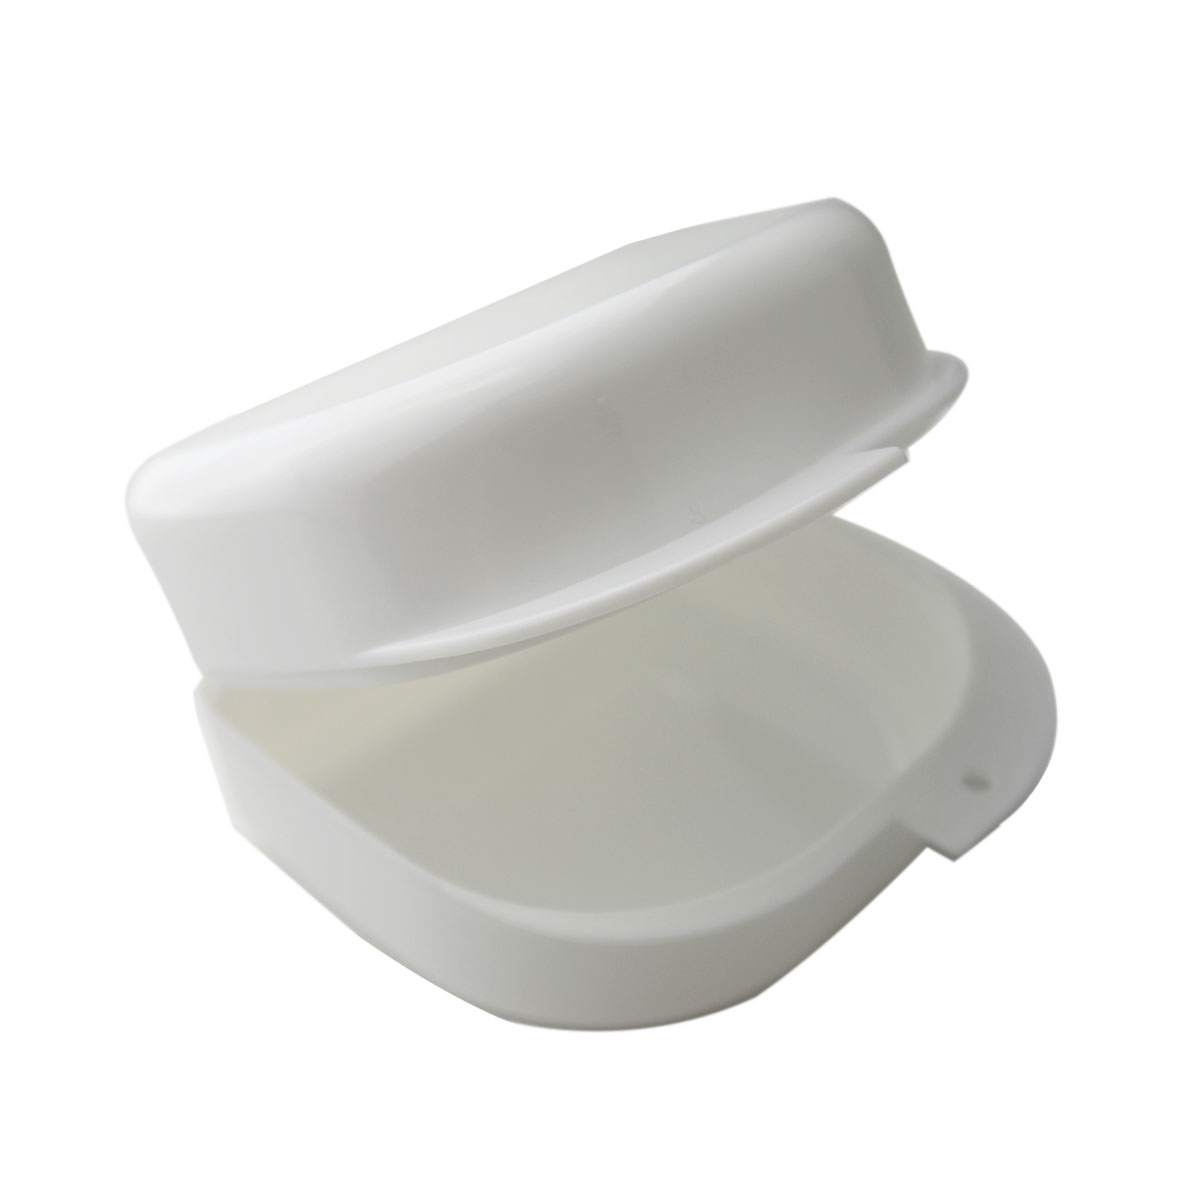 Grin365 Großer Retainer Fall für Retainer, Mundschutz, oder Mund-Behälter - Weiße Farbe